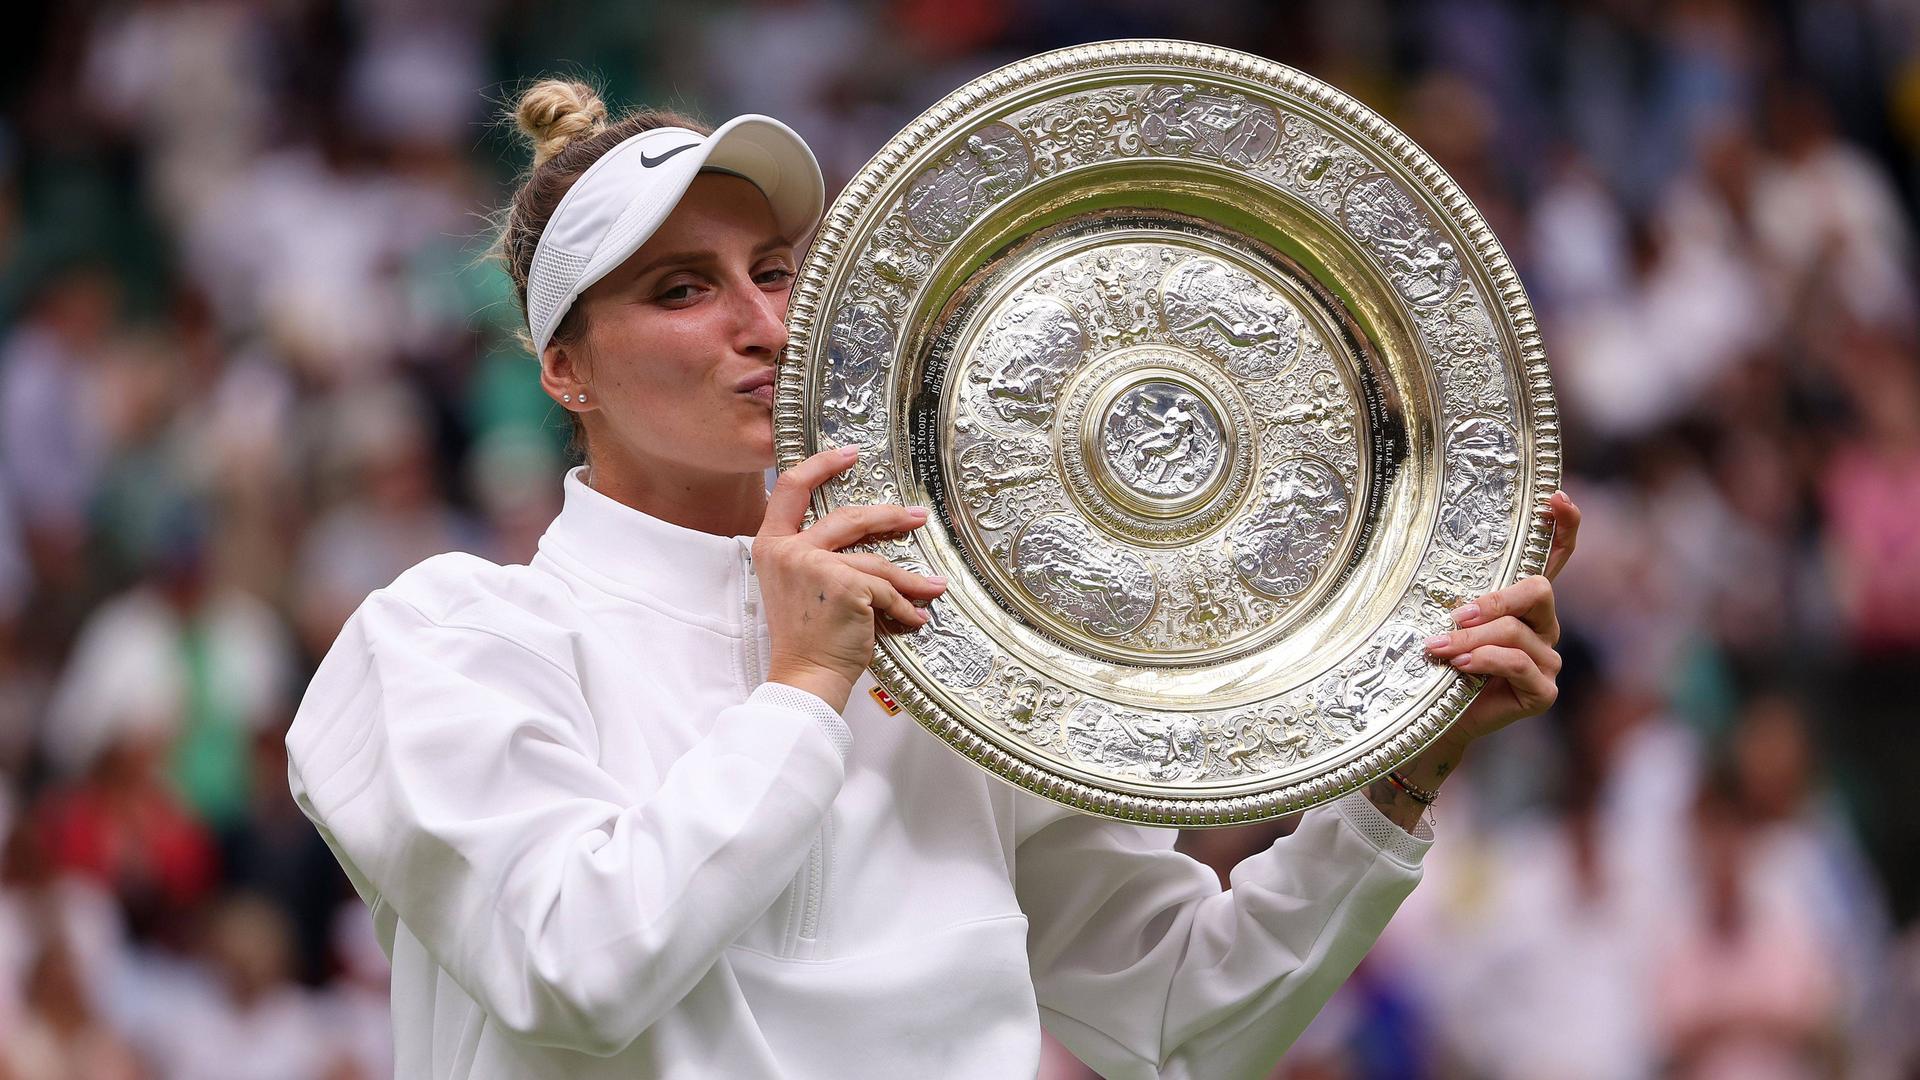 Die Tschechin Marketa Vondrousova steht nach ihrem Sieg auf dem Rasen in Wimbledon und küsst ihre Gewinner-Schale.